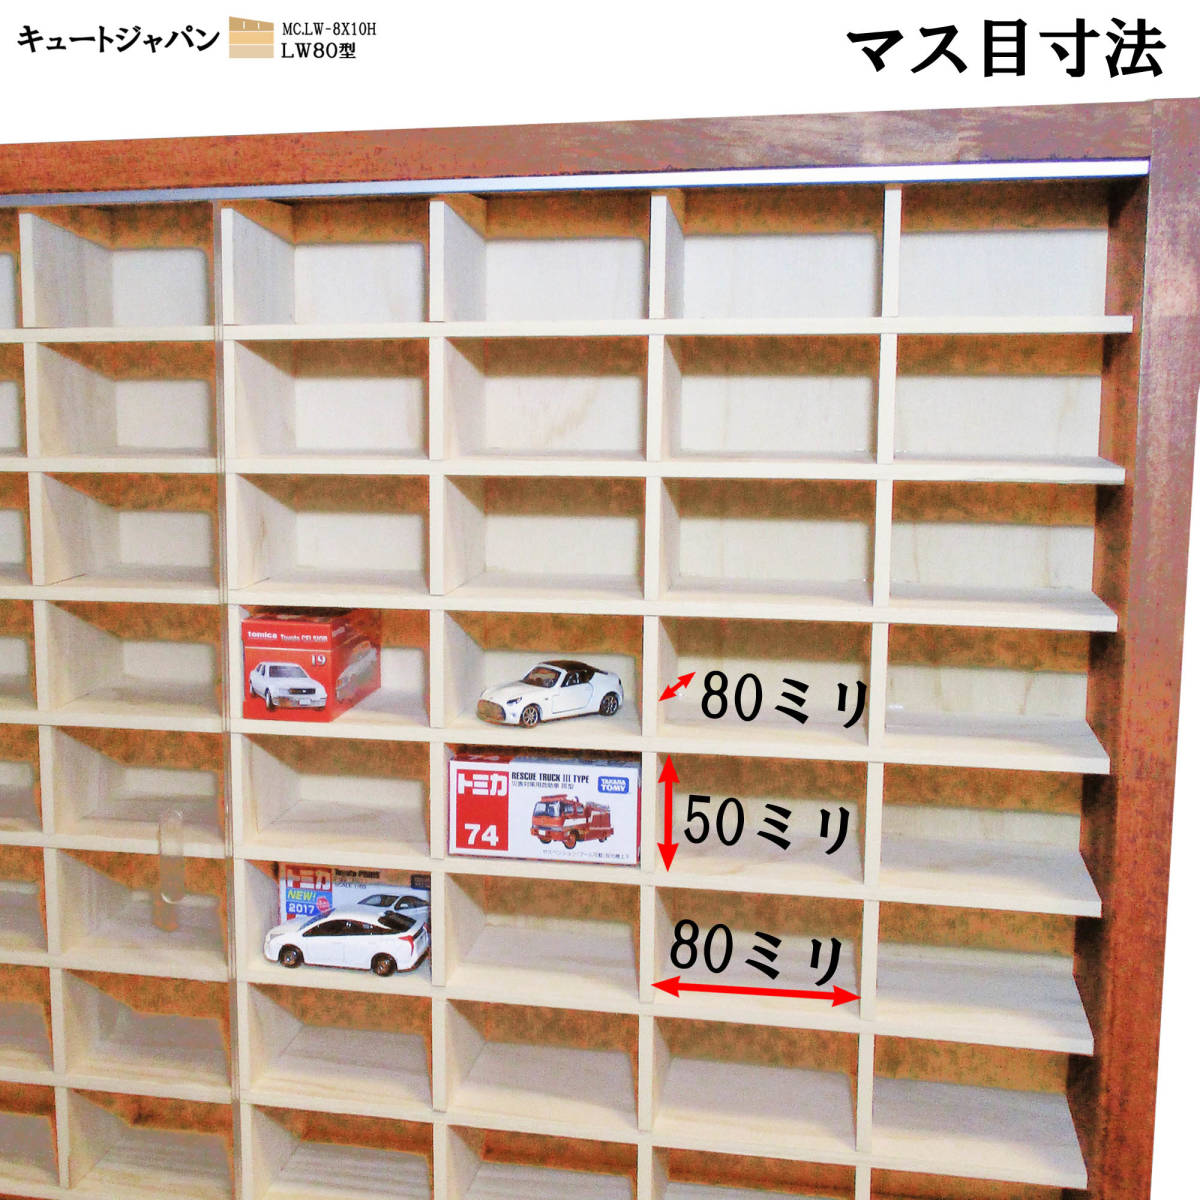 １６０台収納 トミカケース アクリル障子付 メープル色塗装 日本製 